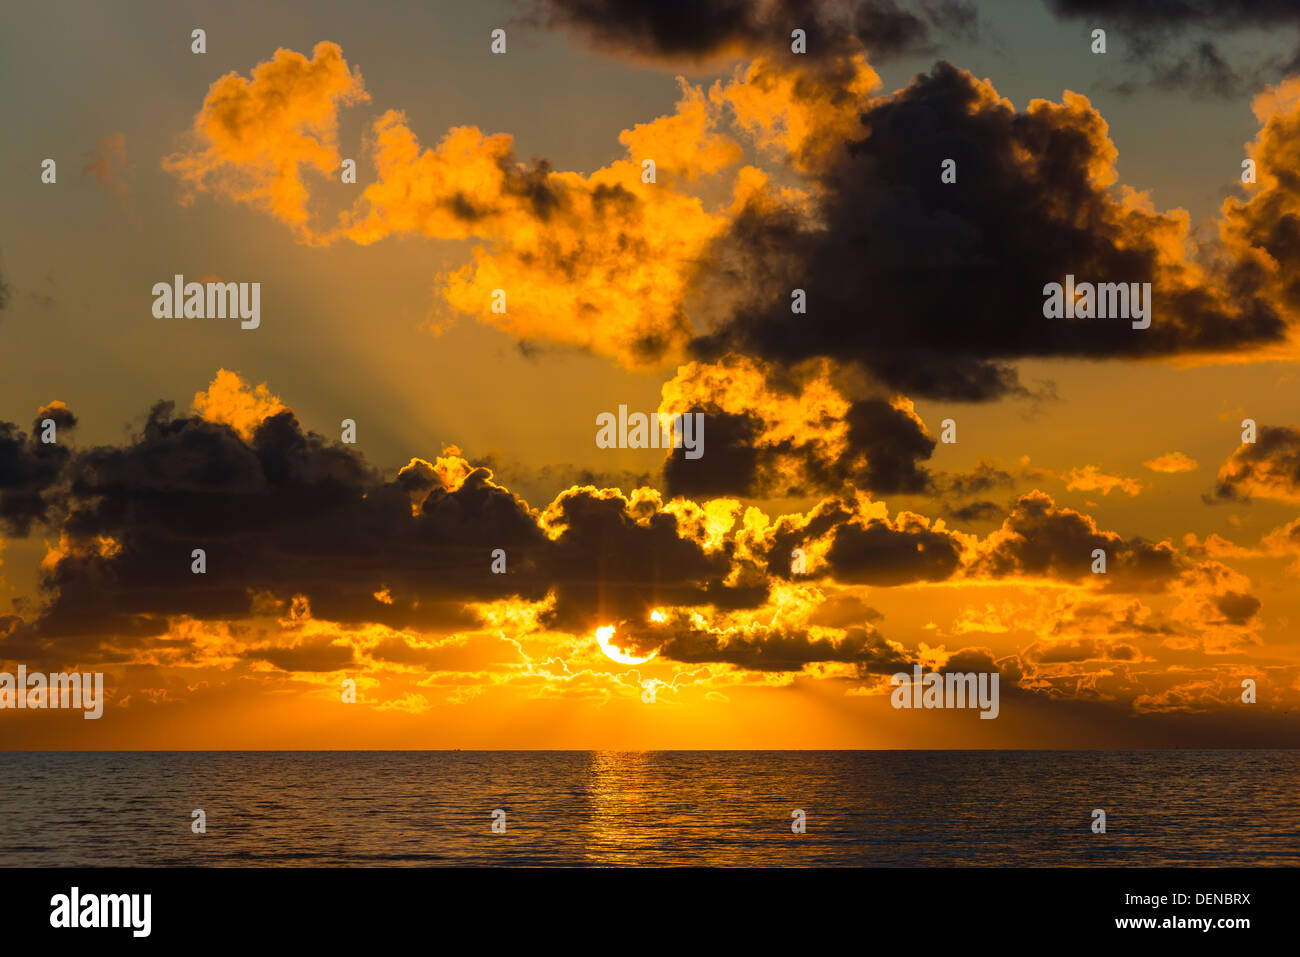 sunset cleveleys lancashire england uk europe Stock Photo